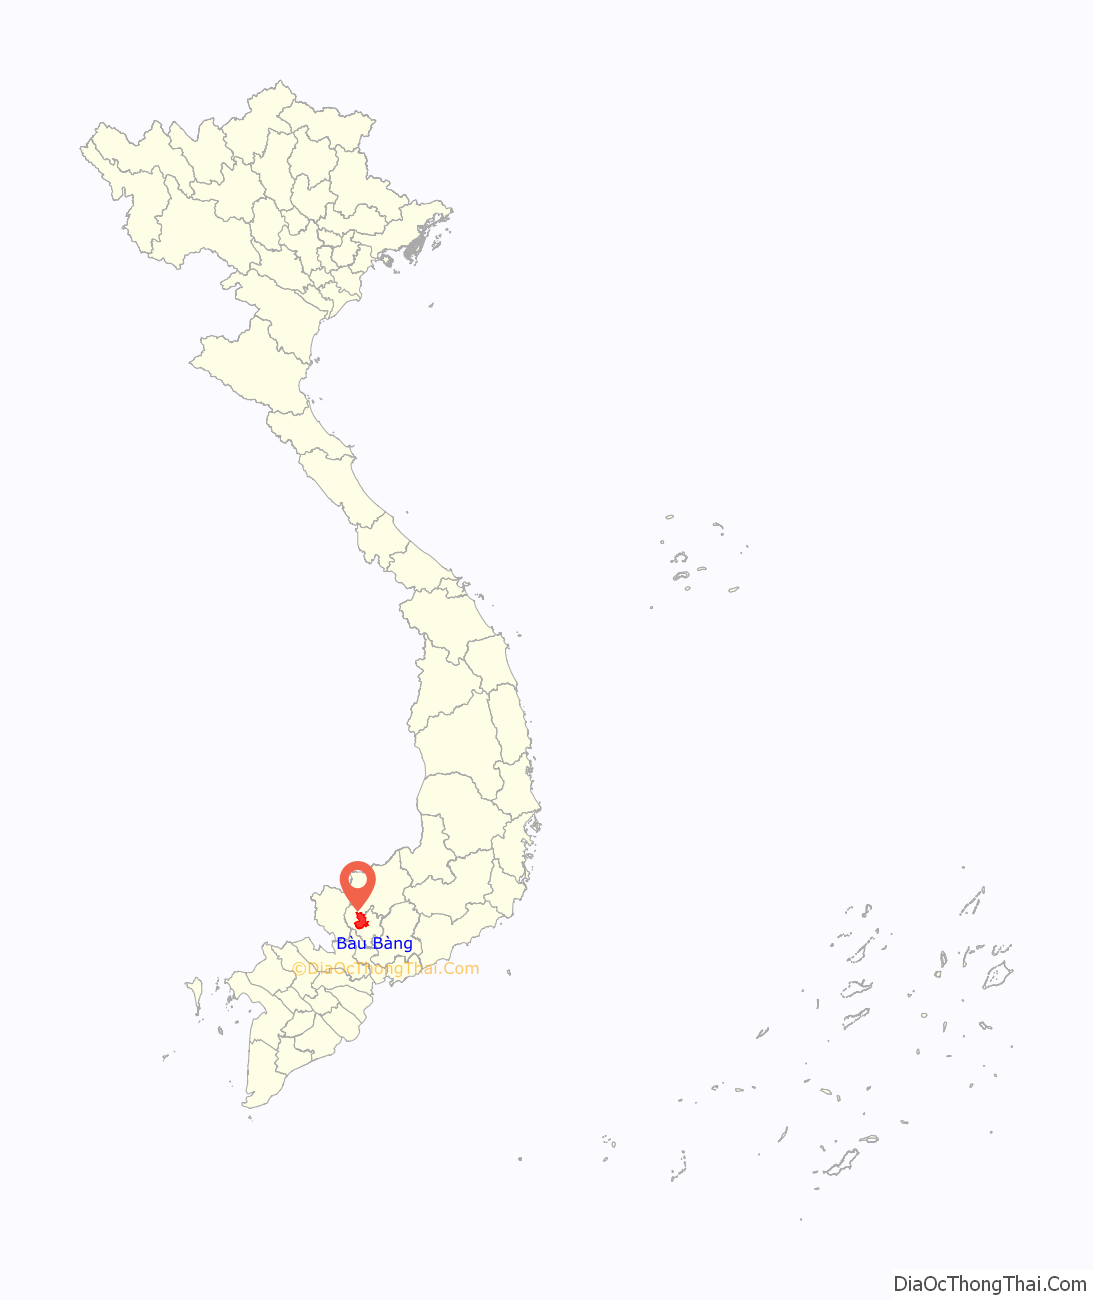 Huyện Bàu Bàng ở đâu? Vị trí của huyện Bàu Bàng